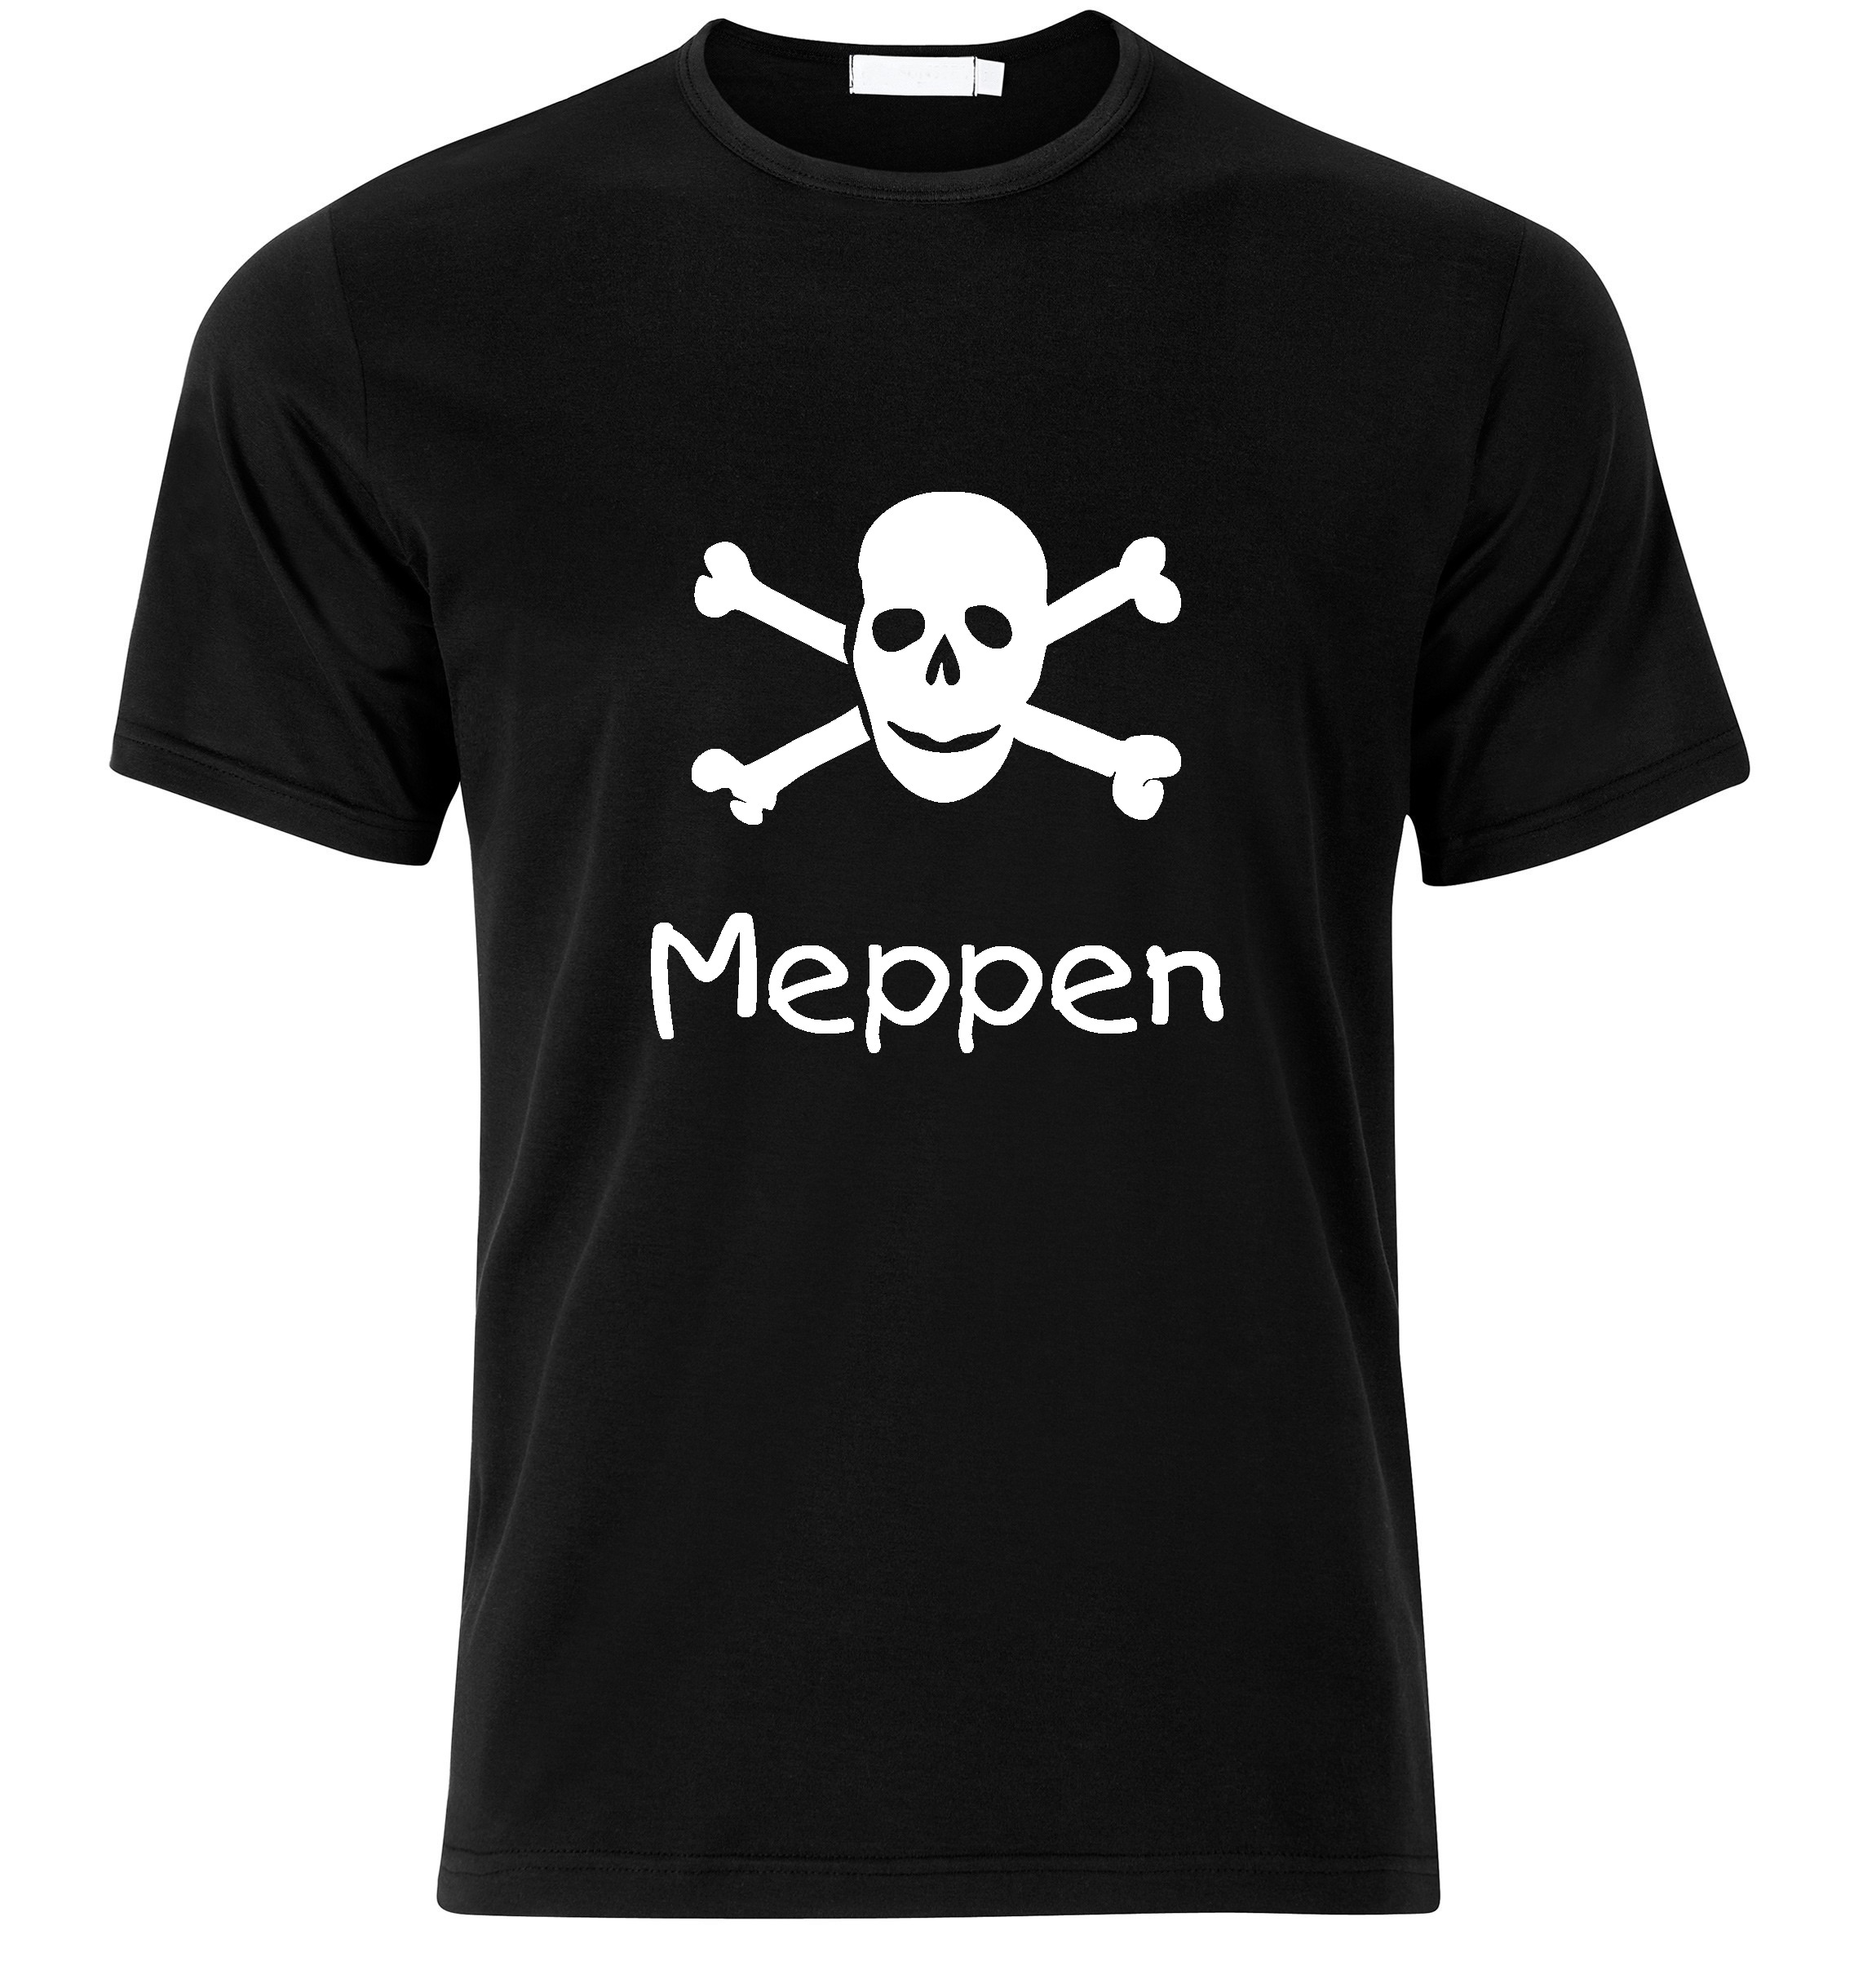 T-Shirt Meppen Jolly Roger, Totenkopf